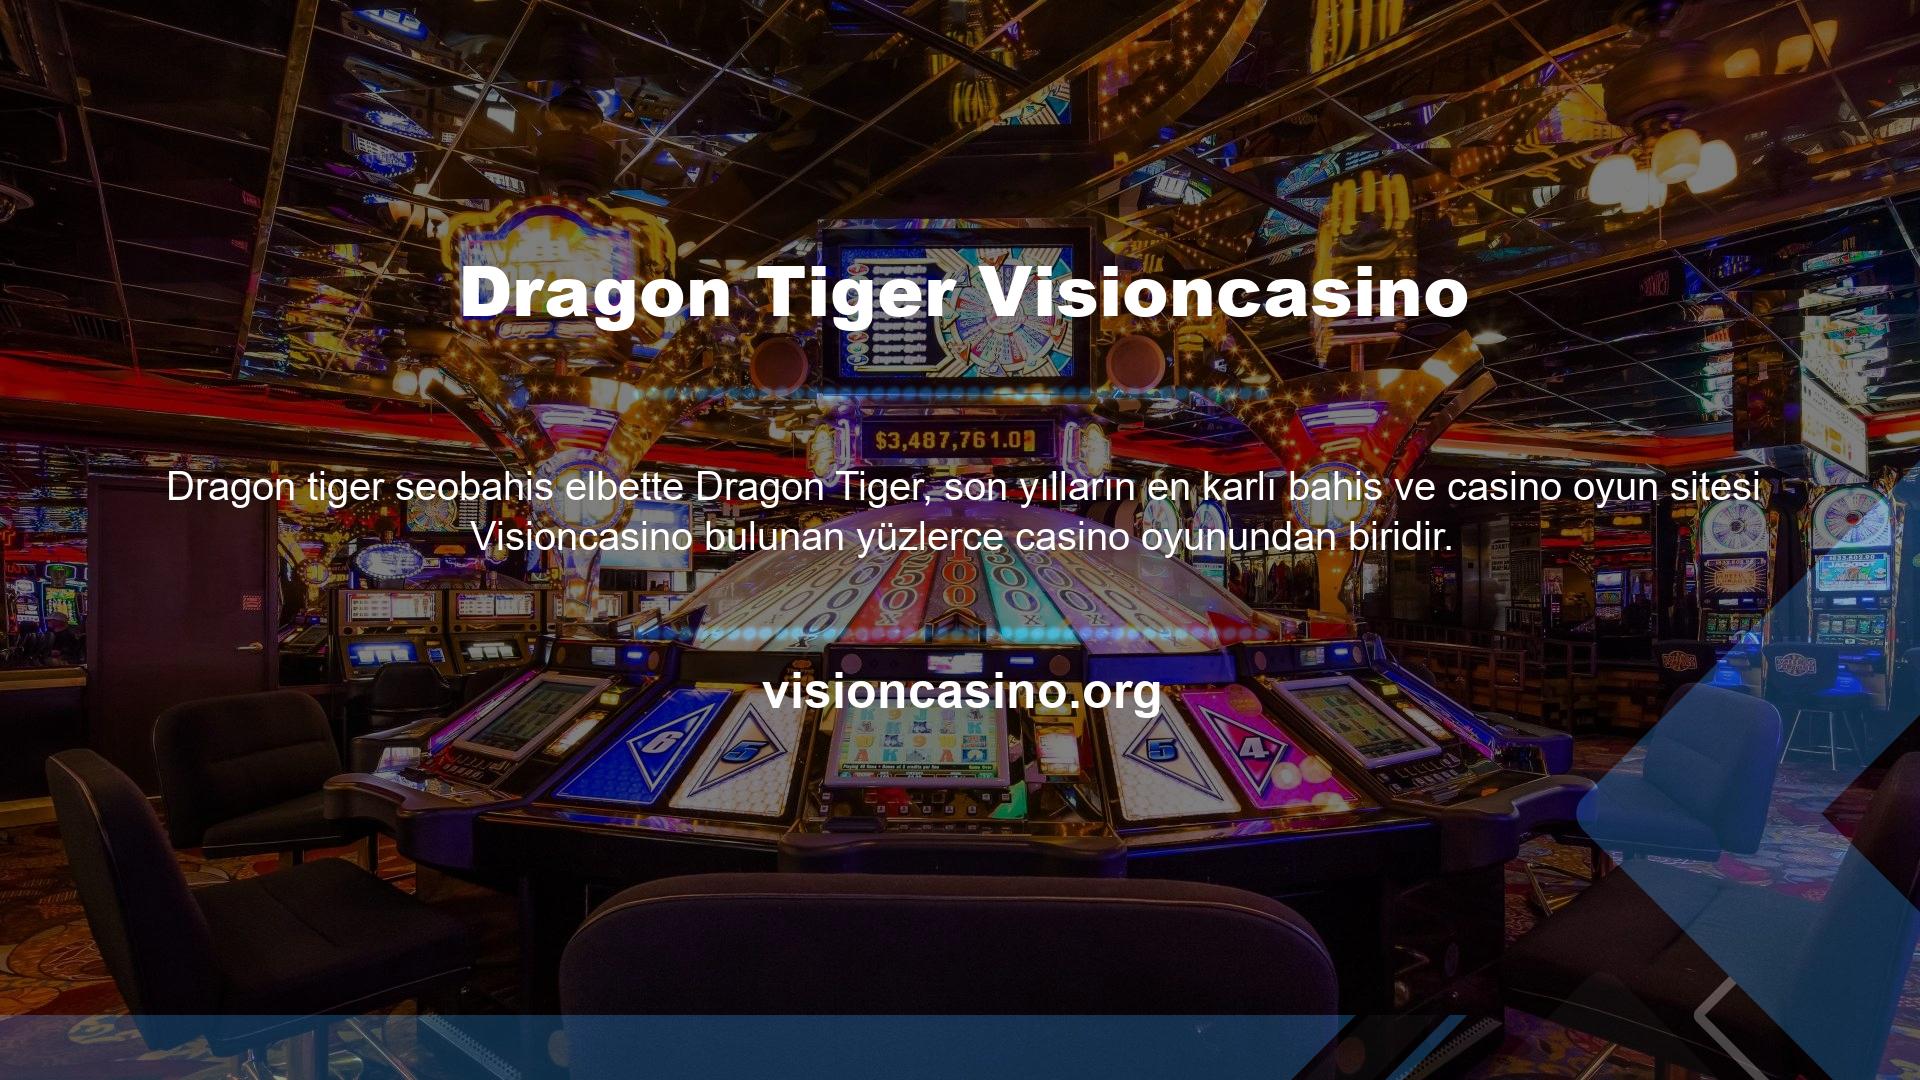 Visioncasino web sitesi üzerinden kayıt olabilirsiniz